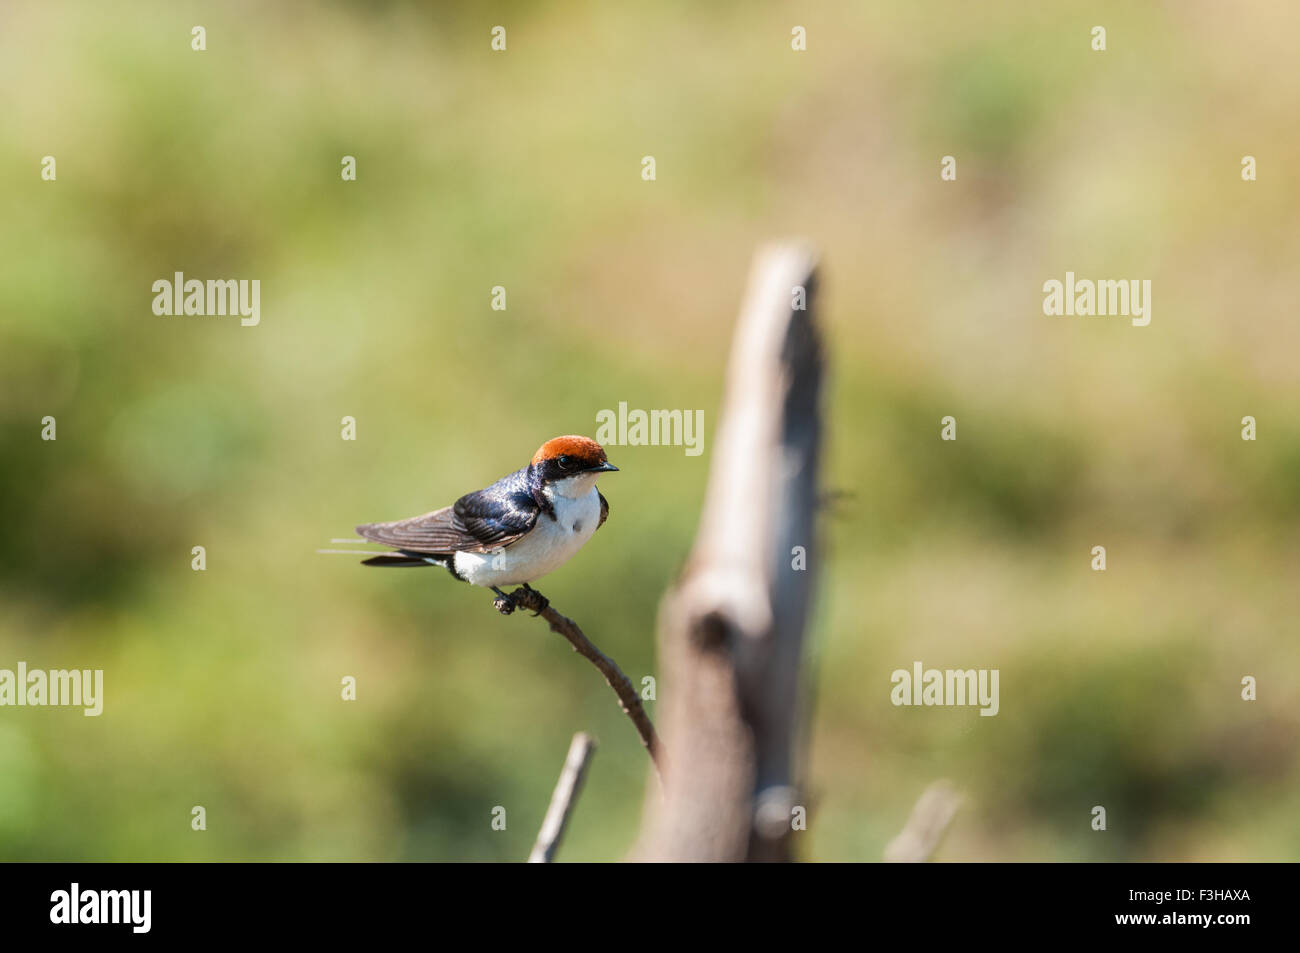 Wire-tailed swallow perché sur une branche mince Banque D'Images